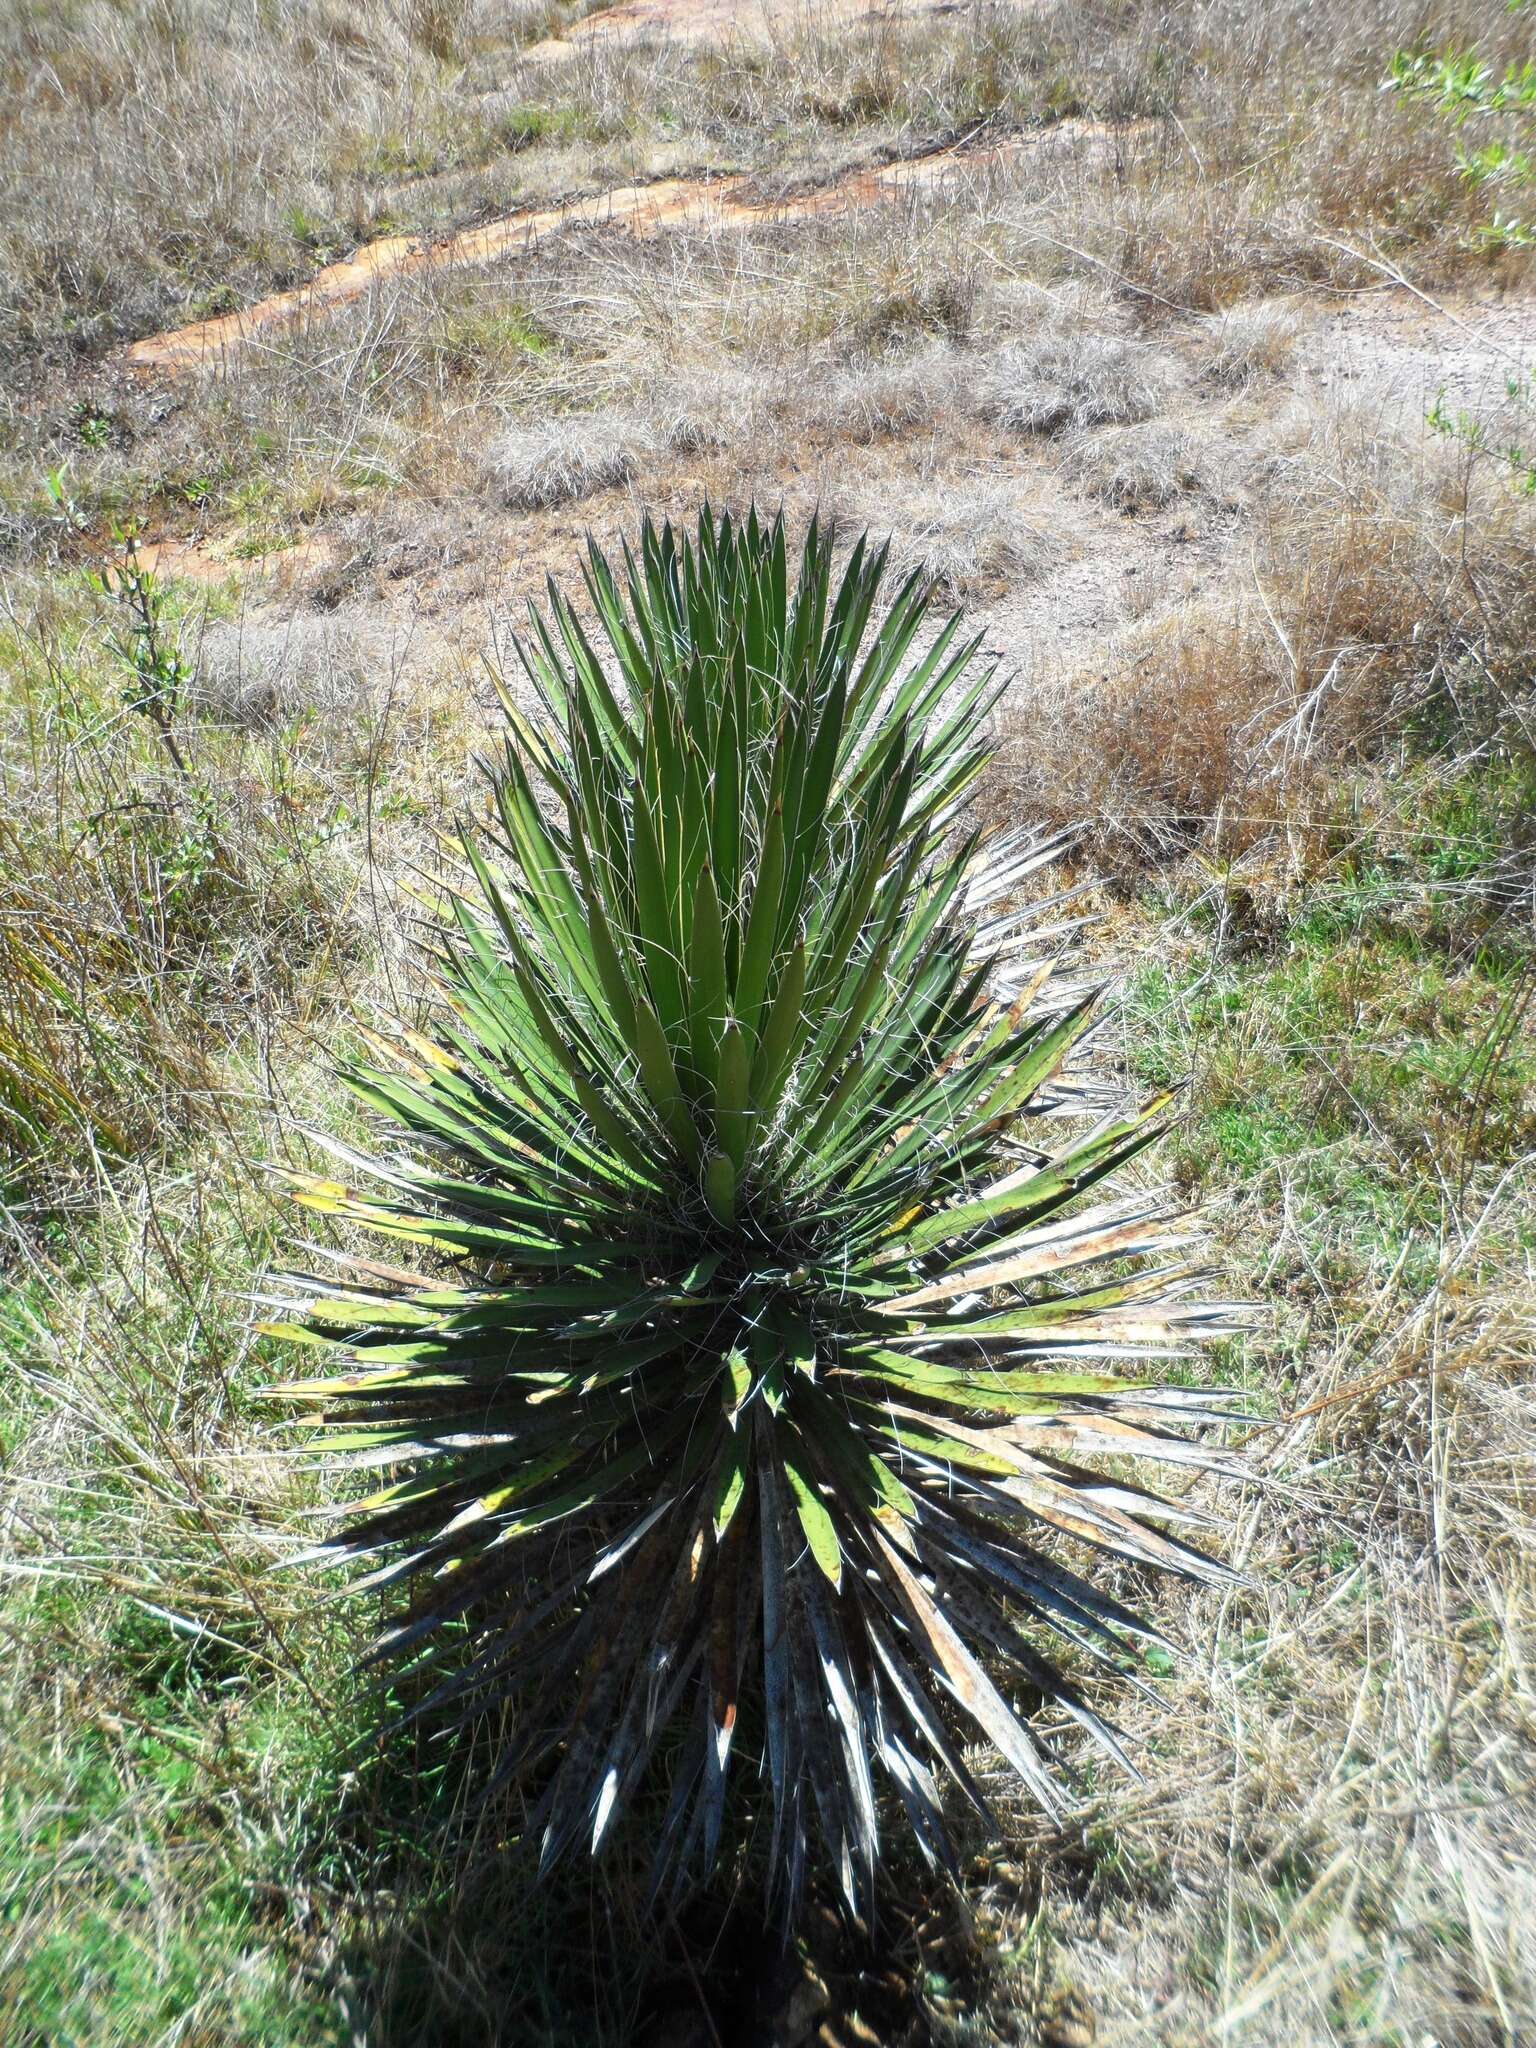 Image of Palma China yucca